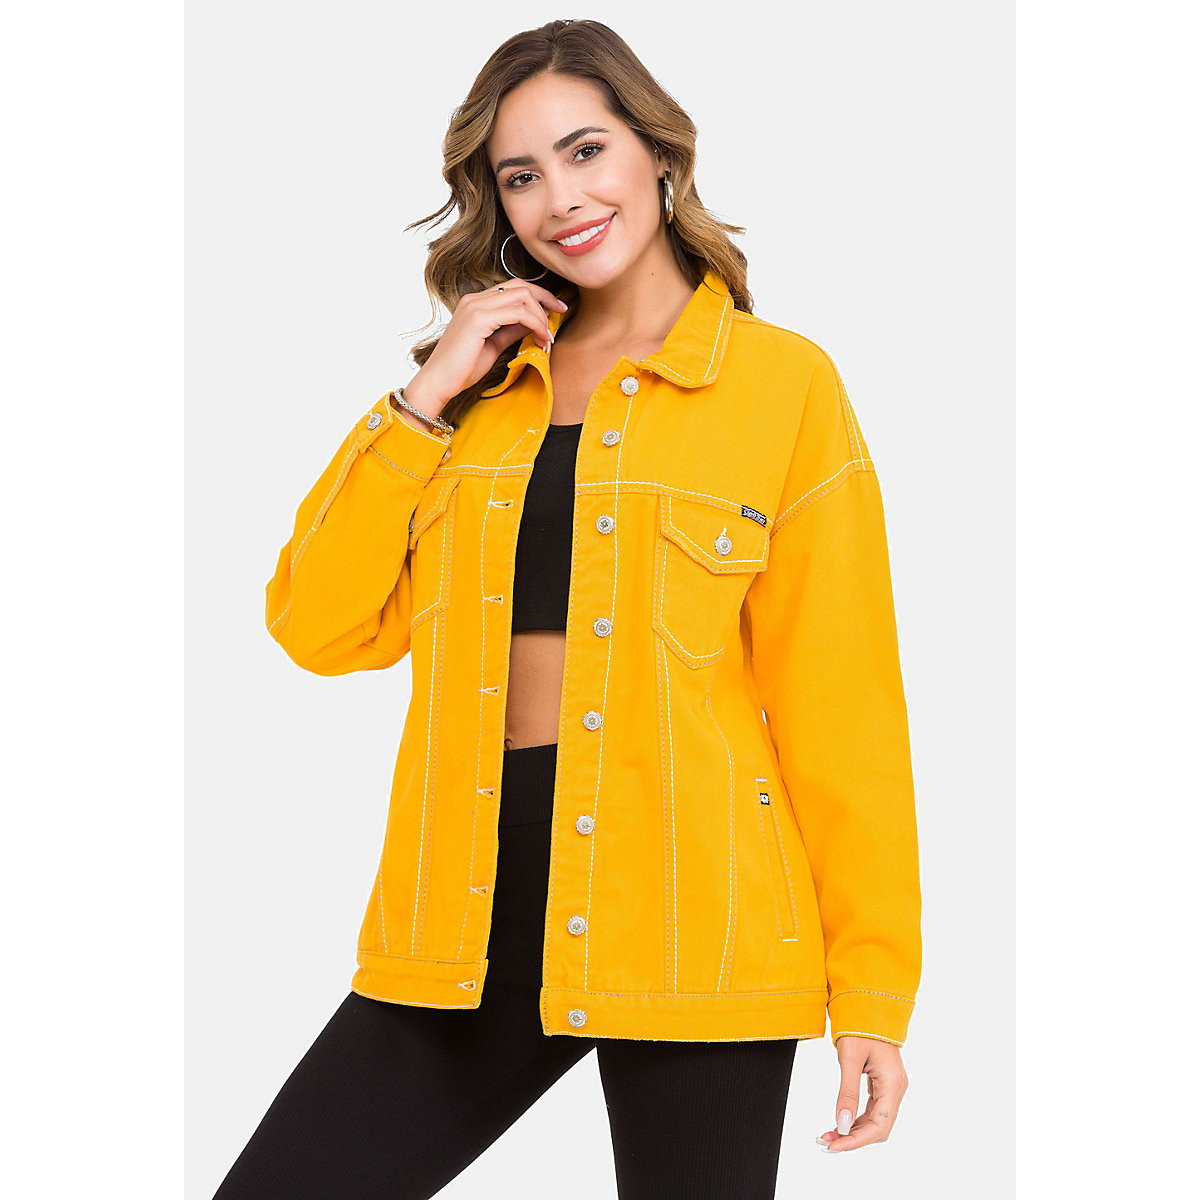 CIPO & BAXX® Jeansjacke für Mädchen gelb